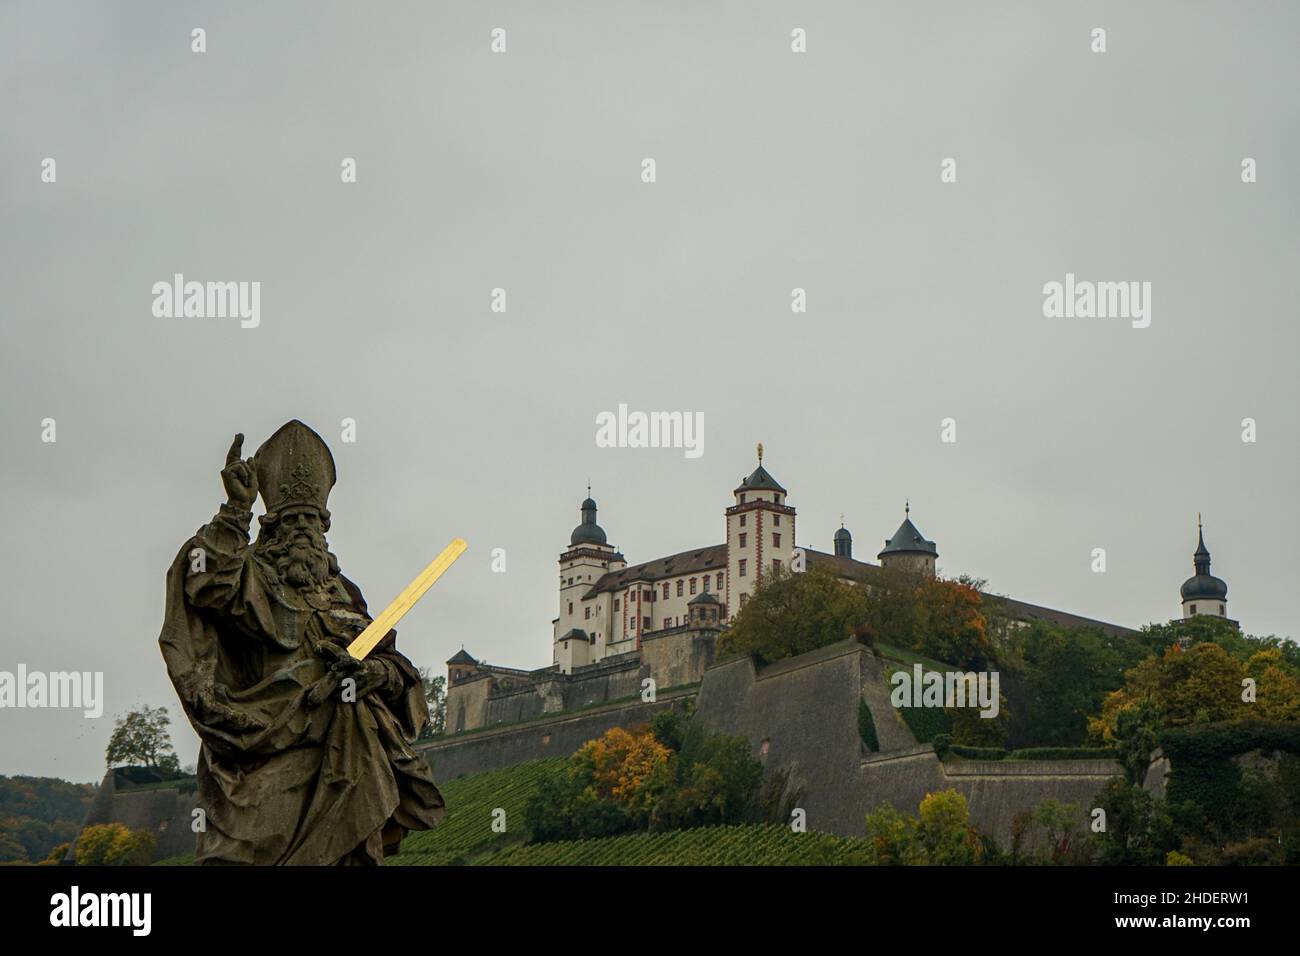 Una escultura que lleva una espada brillante dorada en su mano izquierda.El brazo derecho se levanta con un dedo índice de advertencia. Würzburg Marienberg fortaleza detrás. Foto de stock